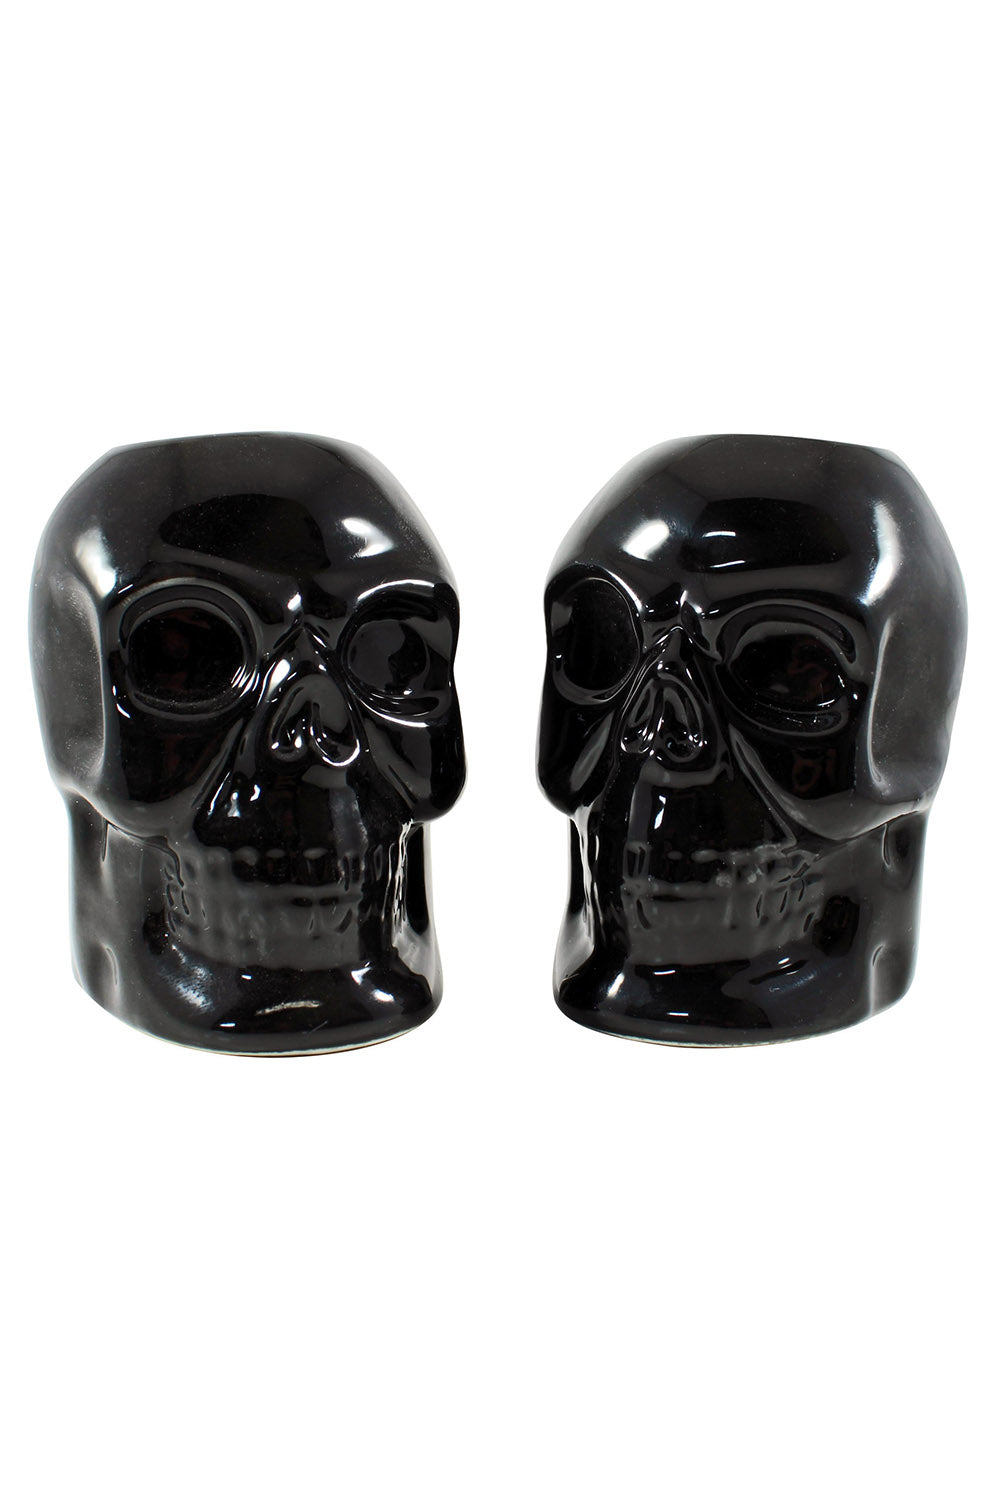 Skull Candlestick Holders [Black]